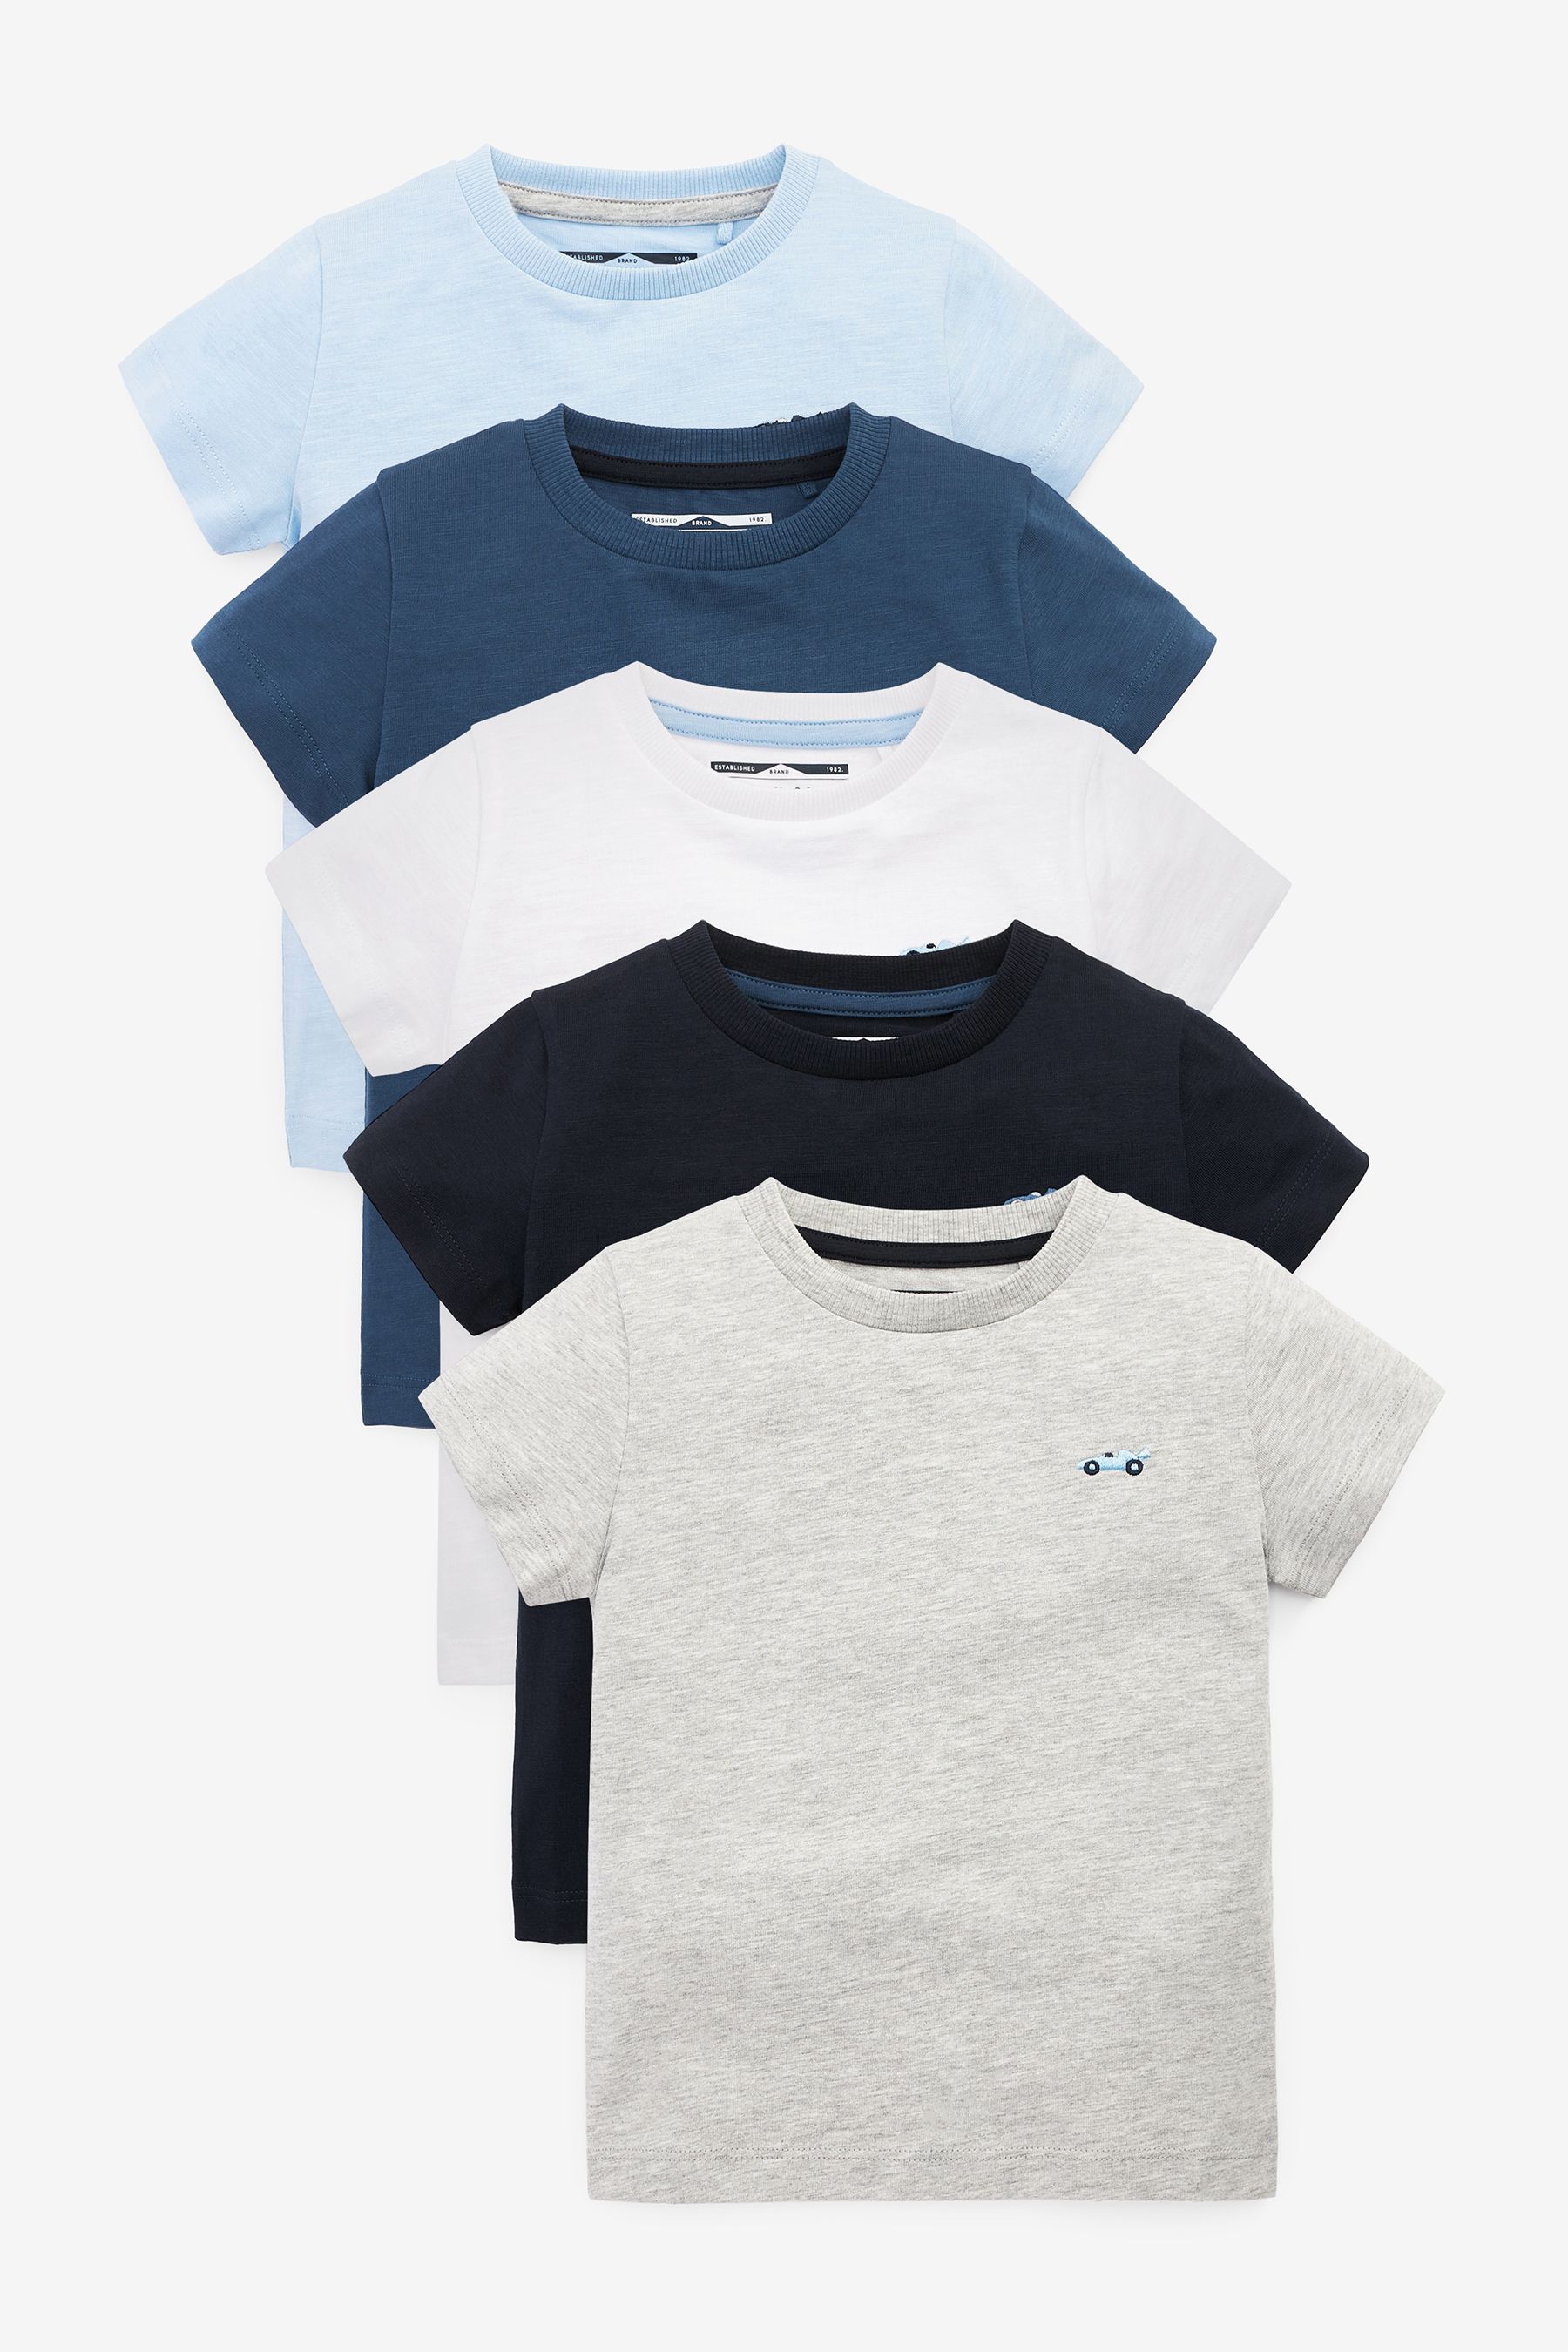 Комплект из 5 футболок с короткими рукавами Next, синий комплект из двух футболок с короткими рукавами 4 года 102 см синий